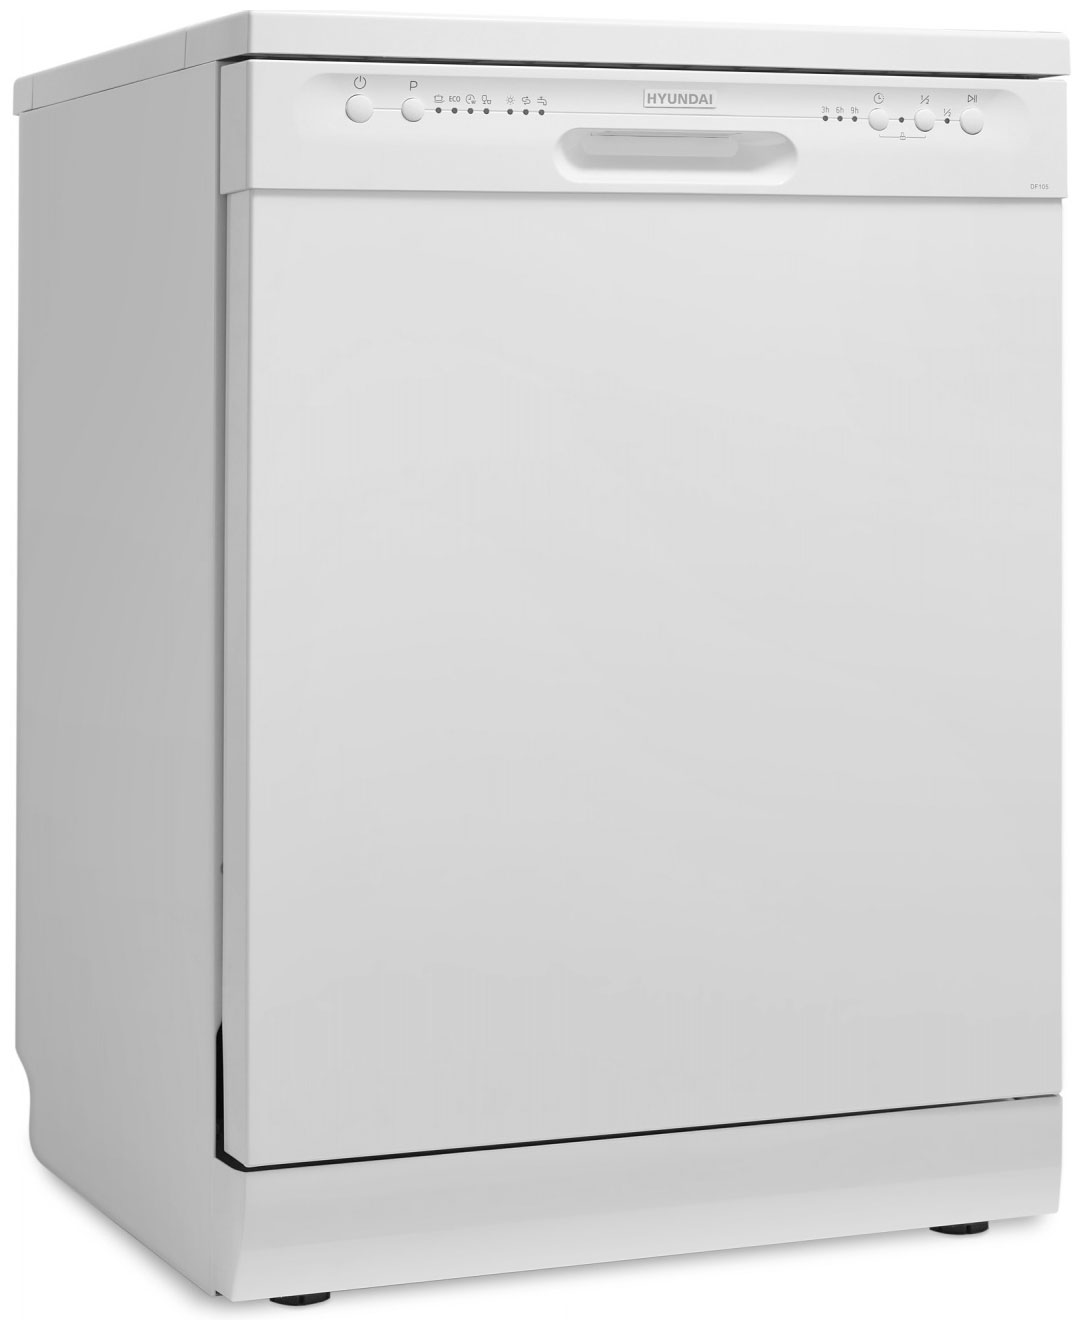 Посудомоечная машина Hyundai DF105 белый компактная посудомоечная машина hyundai dt503 белый